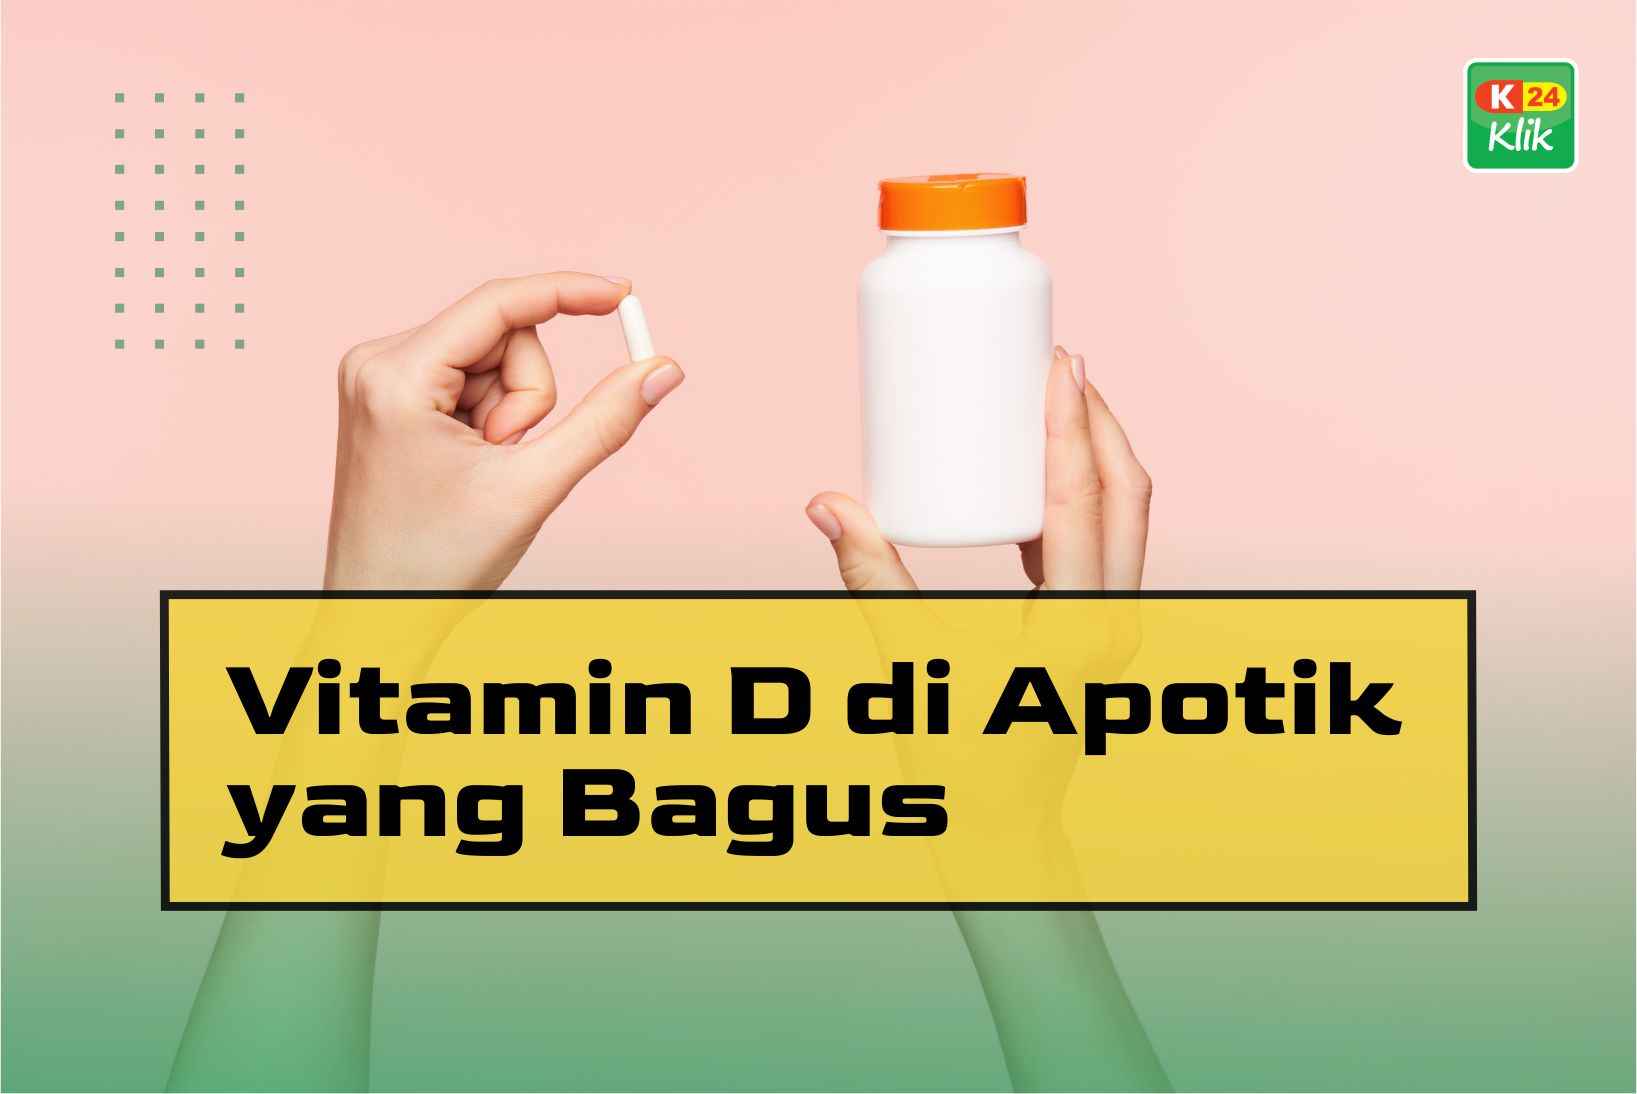 15 Vitamin D Di Apotik Yang Bagus Dan Harganya K24klik 